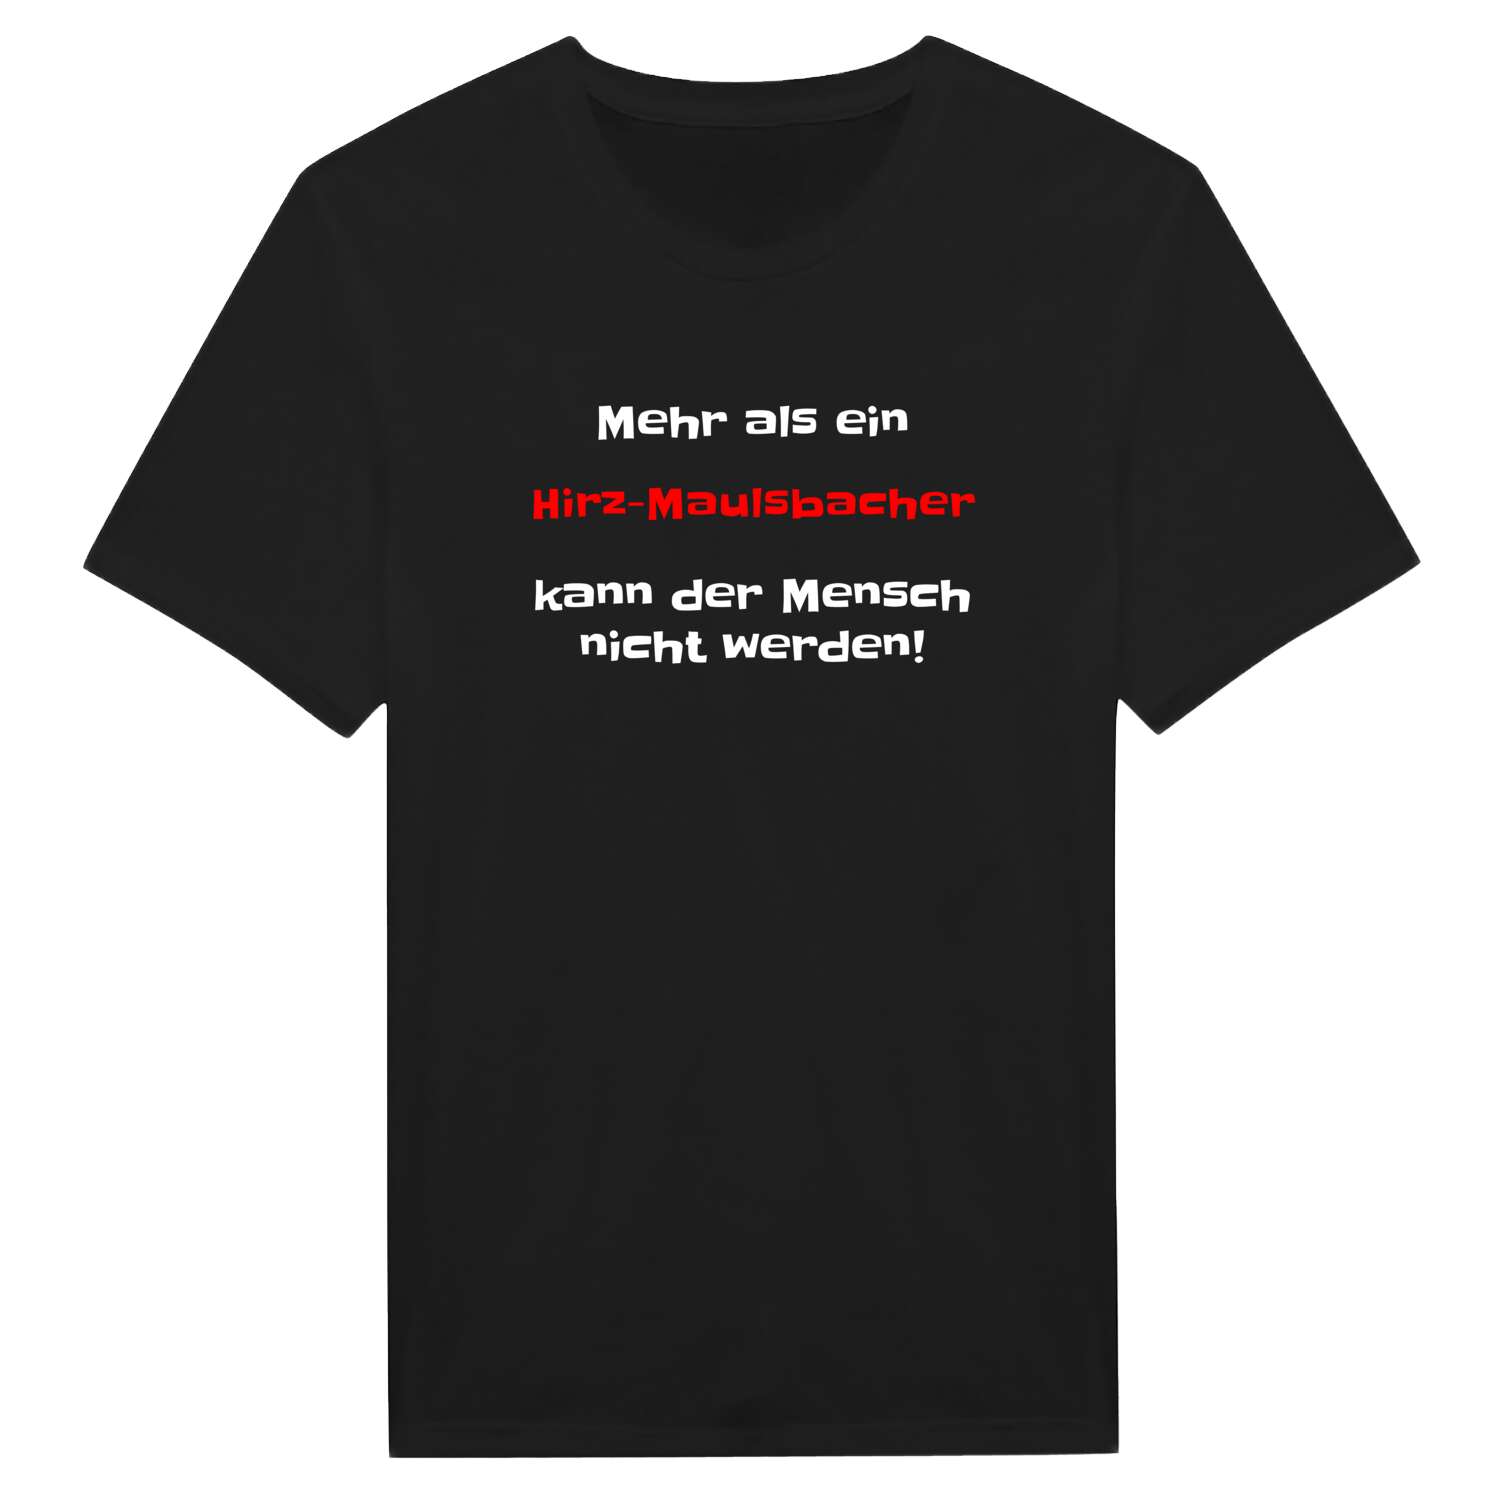 Hirz-Maulsbach T-Shirt »Mehr als ein«